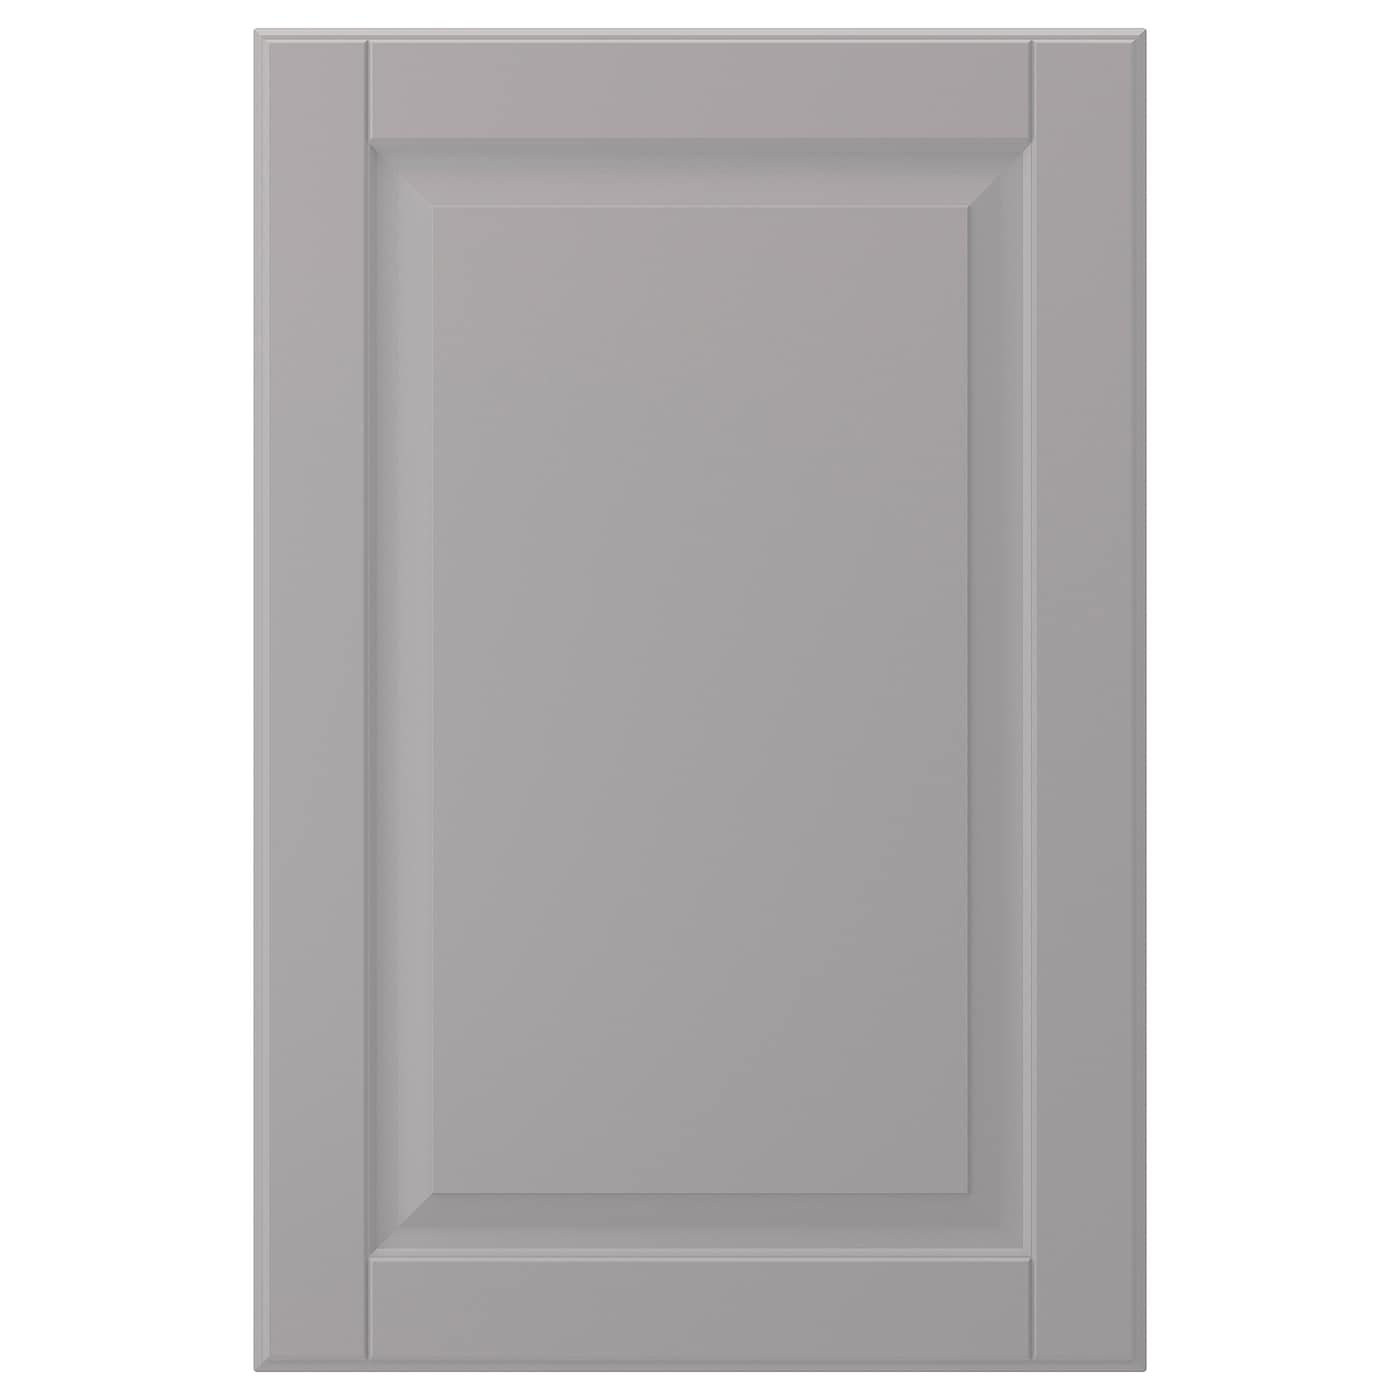 Дверца - IKEA BODBYN, 60х40 см, серый, БУДБИН ИКЕА